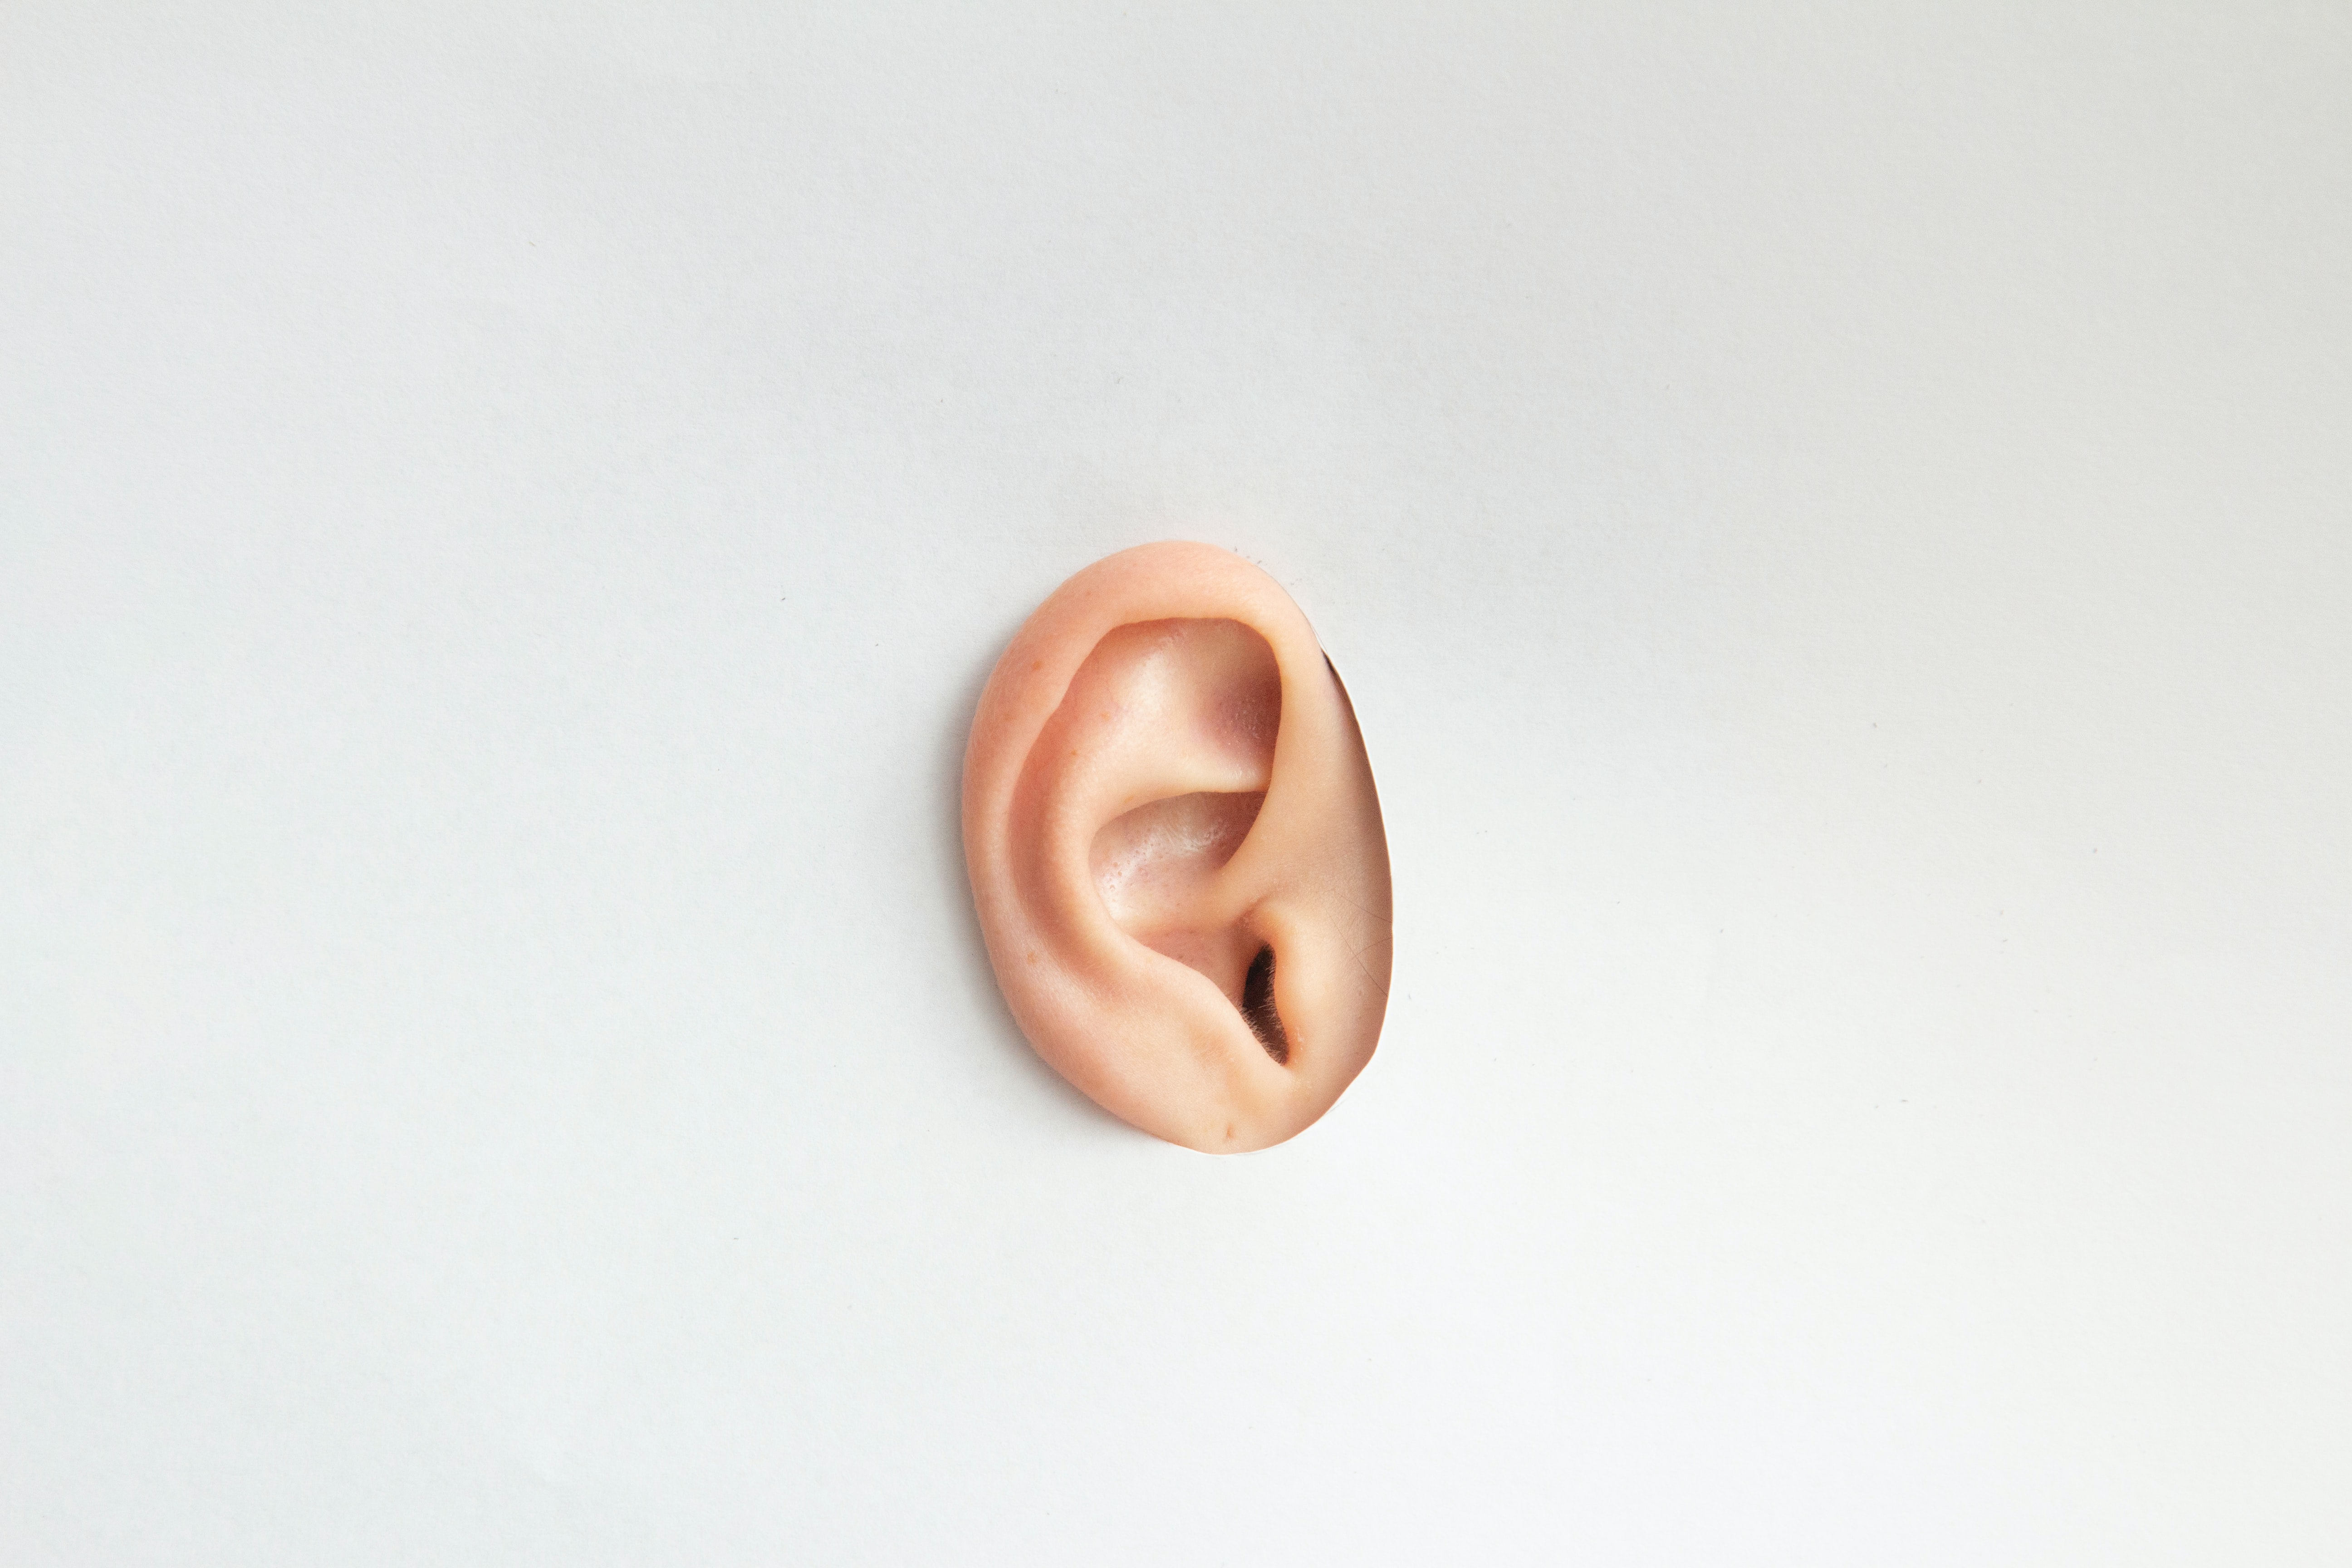 ausu korekcija